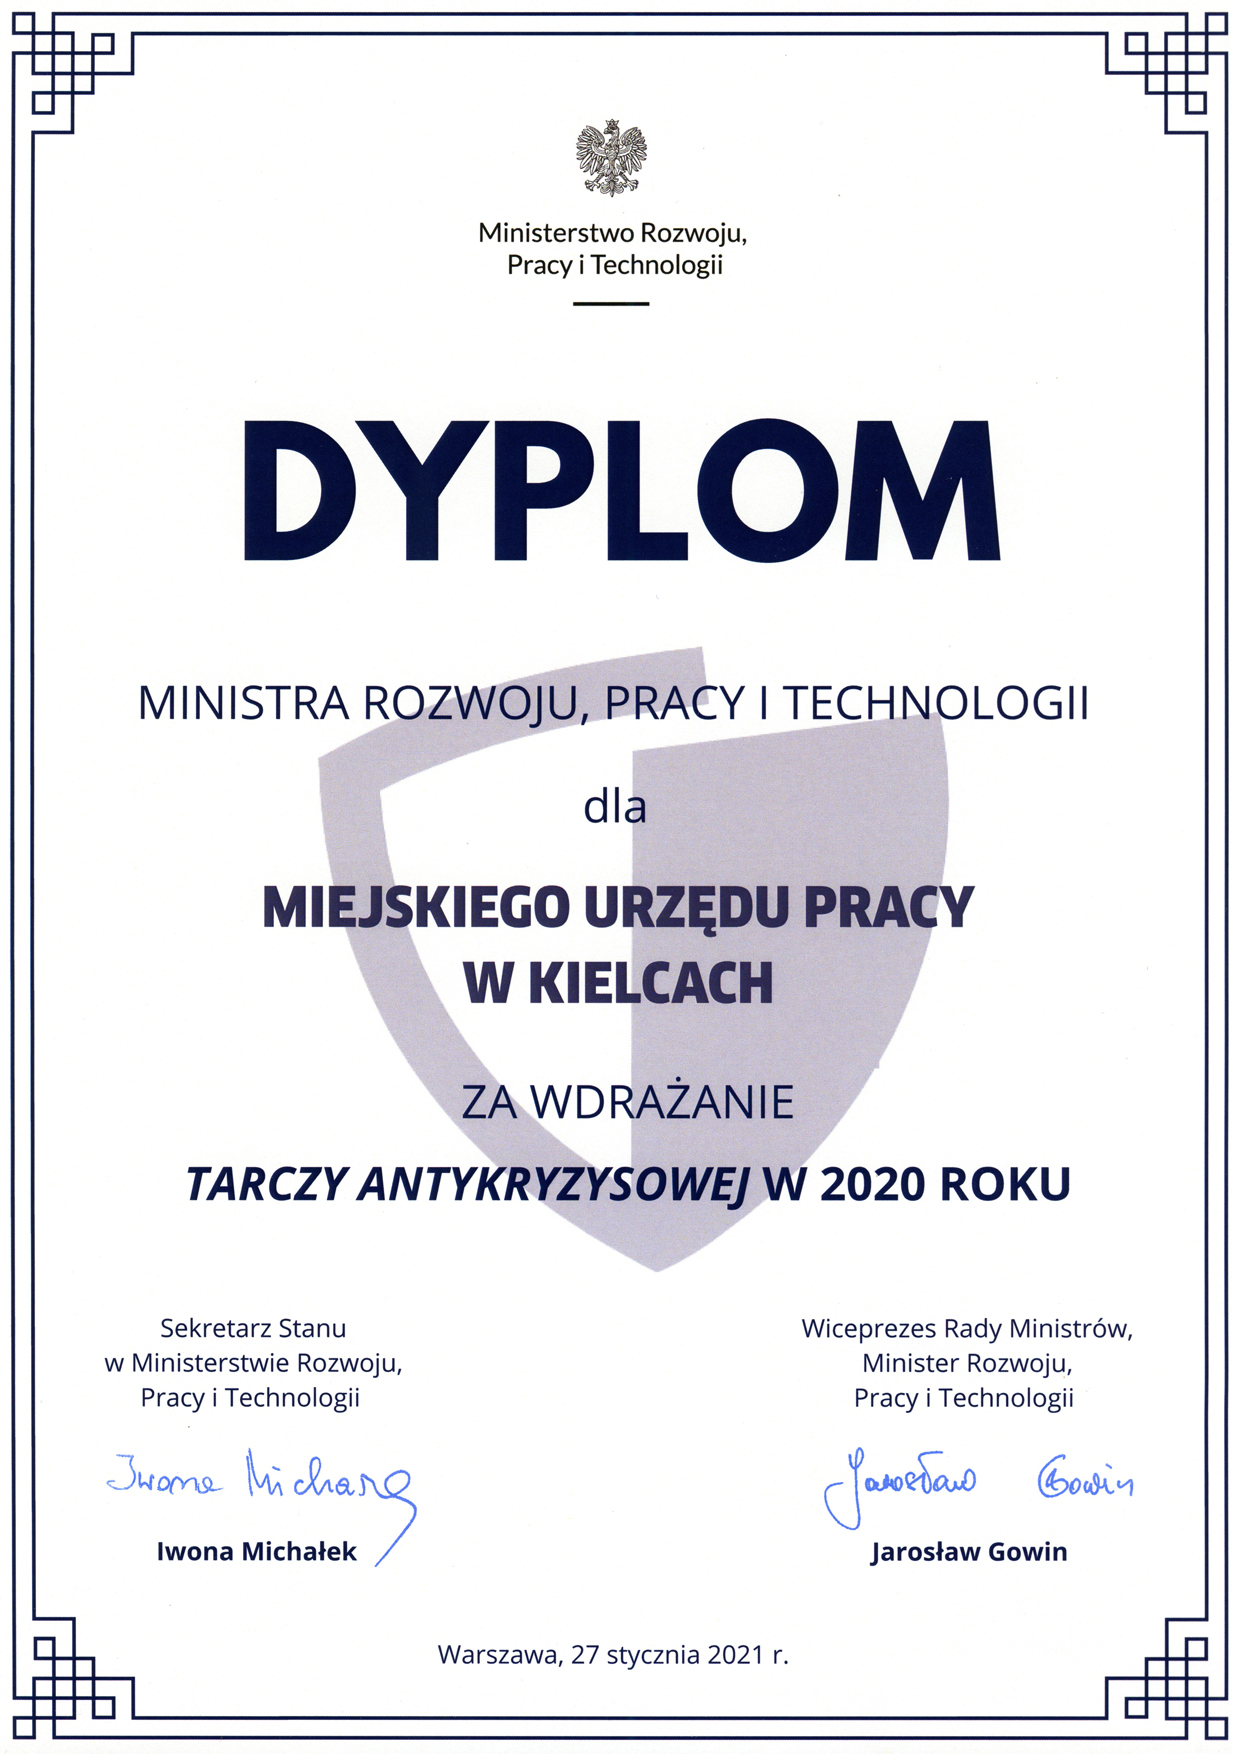 Dyplom Ministra Rozwoju Pracy i Technologii